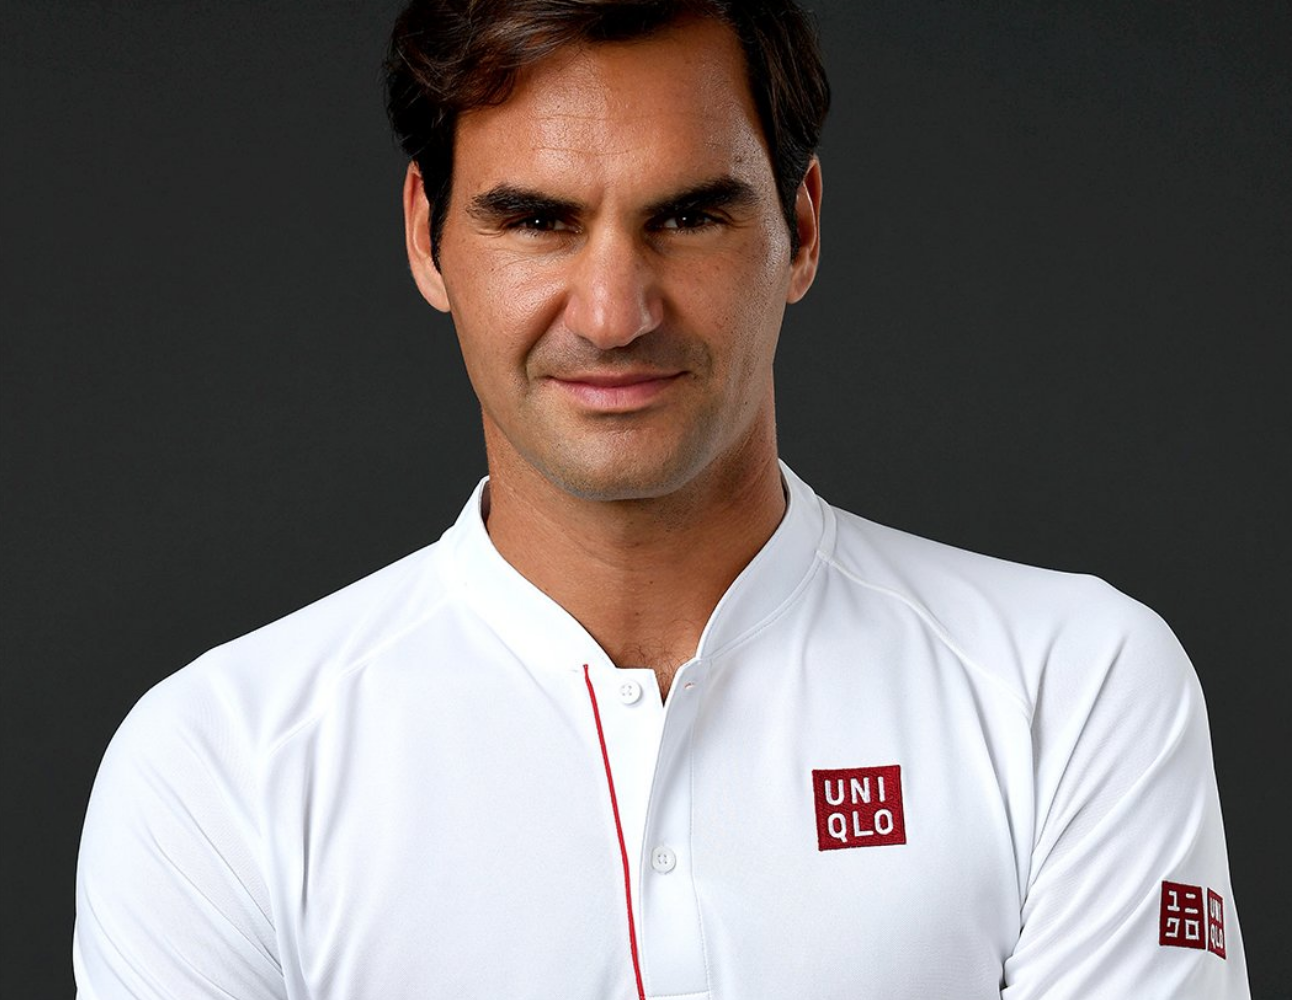 Los Andes - La nueva marca de ropa que representa a Federer no es moda, es  tecnología - Periodismo de verdad.